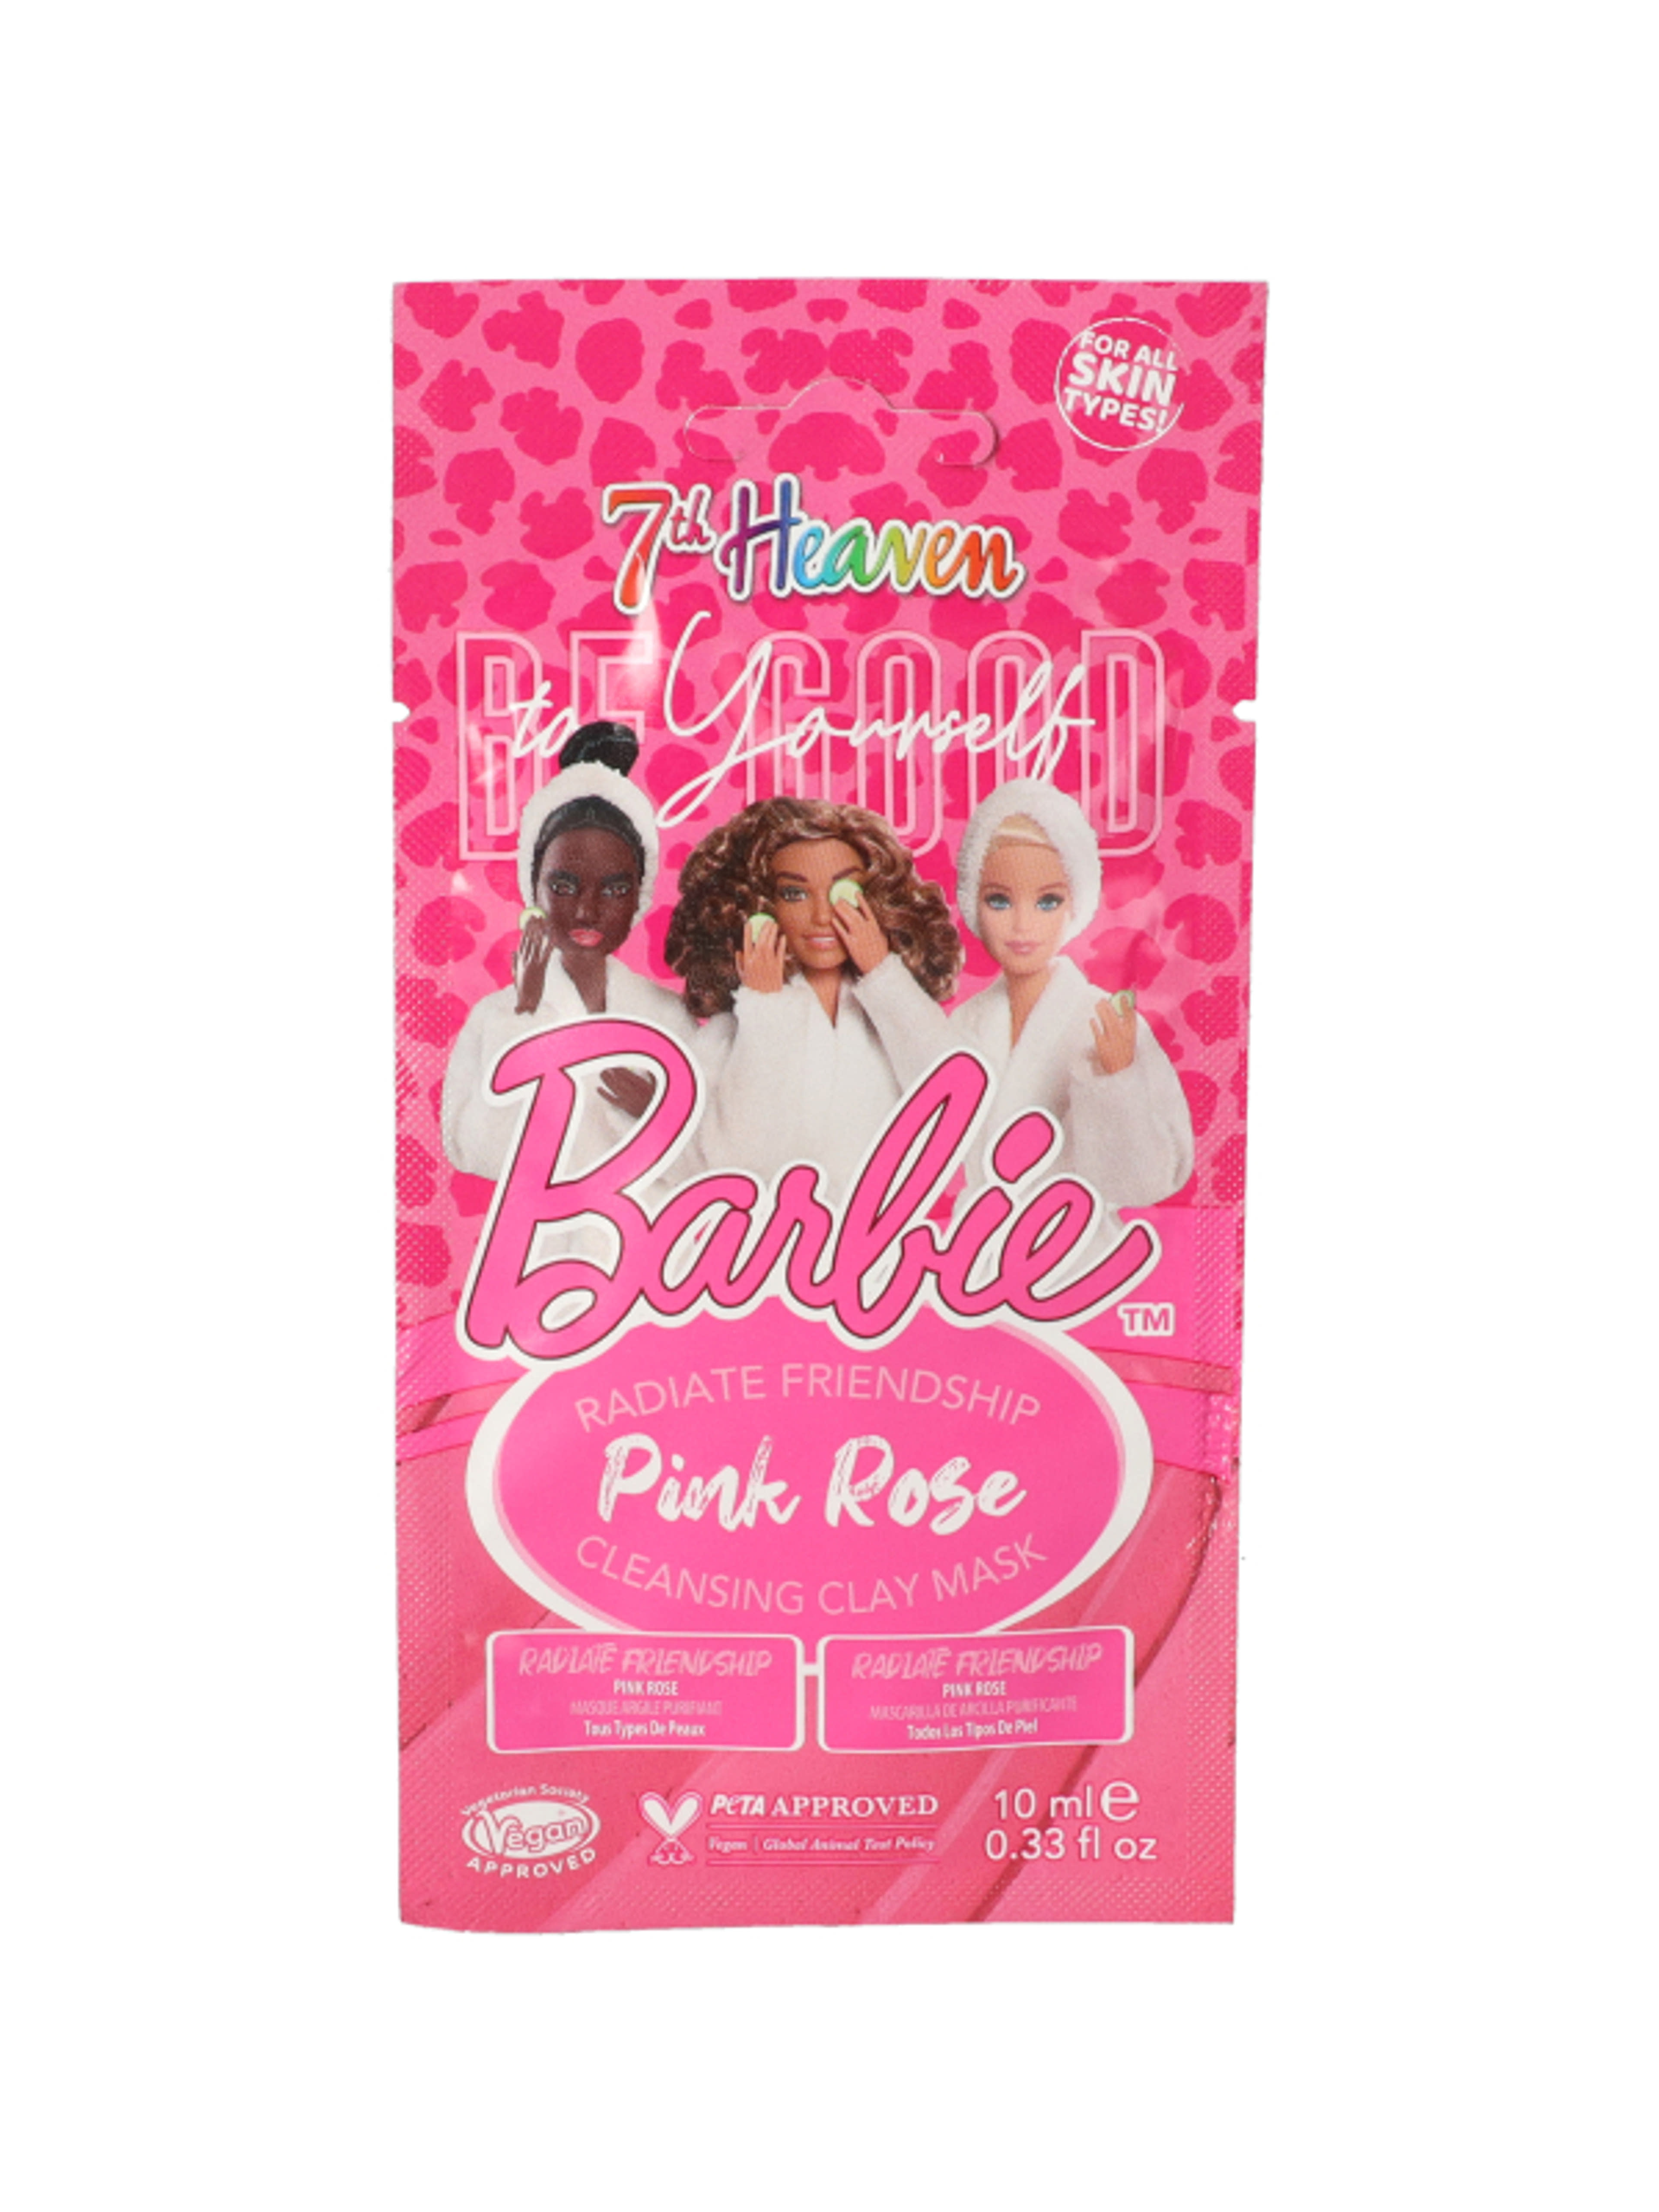 7th Heaven Barbie Pink Rose tisztító agyagmaszk - 10 ml